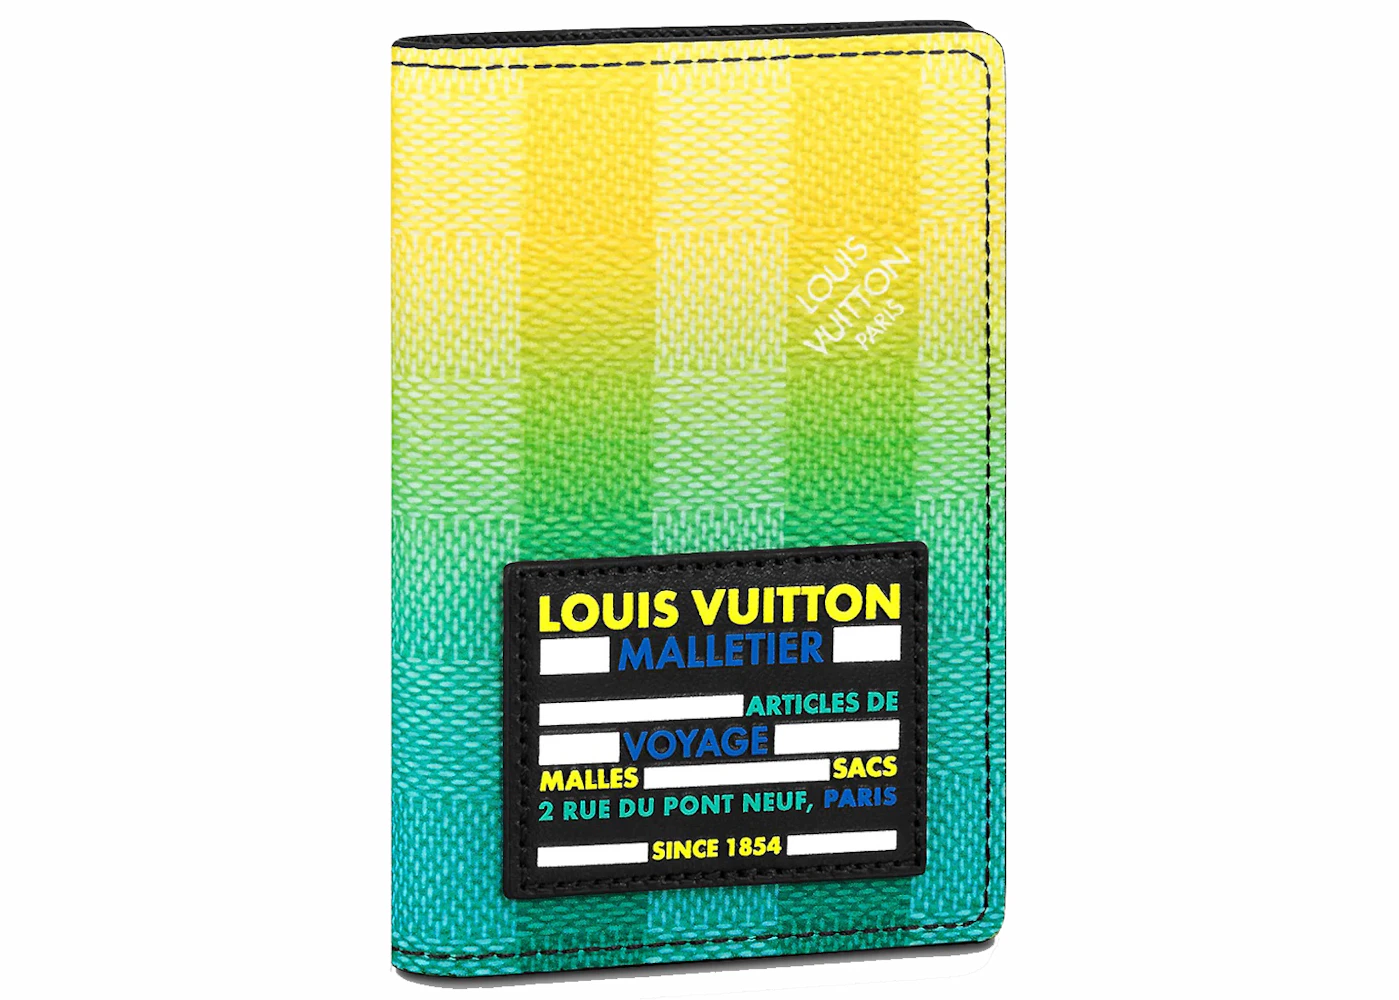 Louis Vuitton Pocket Organizer Damier Stripes Coated Canvas Multicolor